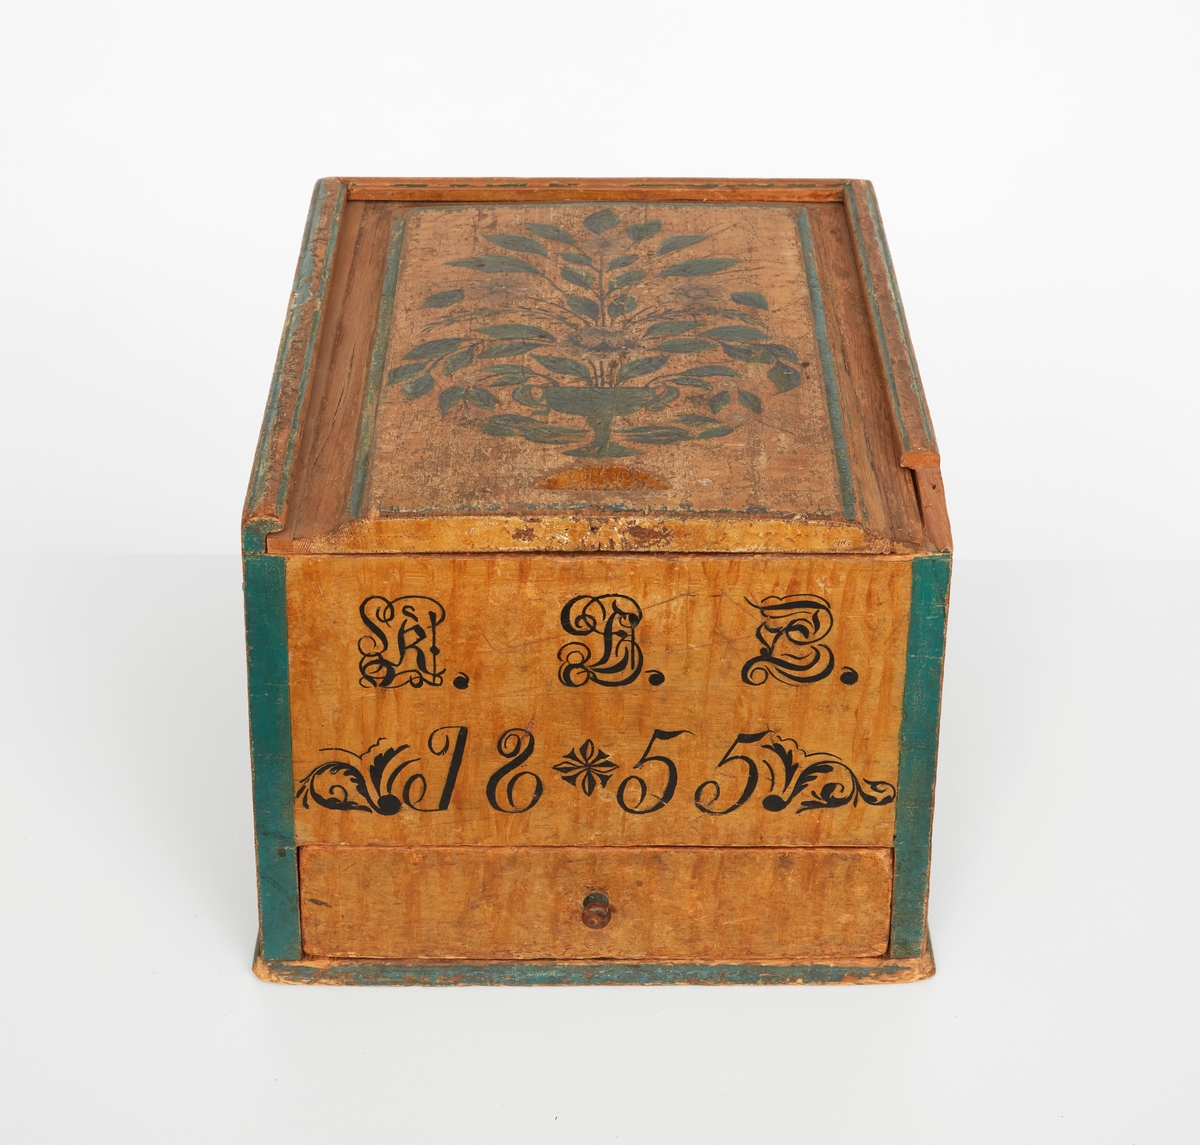 Timpask av furu, rektangulär med draglåda. Gulmålad med gröna hörn och lister. Draglock med blomsterurna i svart, grönt och vitt. Locket lagat på båda långsidorna. På askens kortsida: "K.B.D. ? 1855".